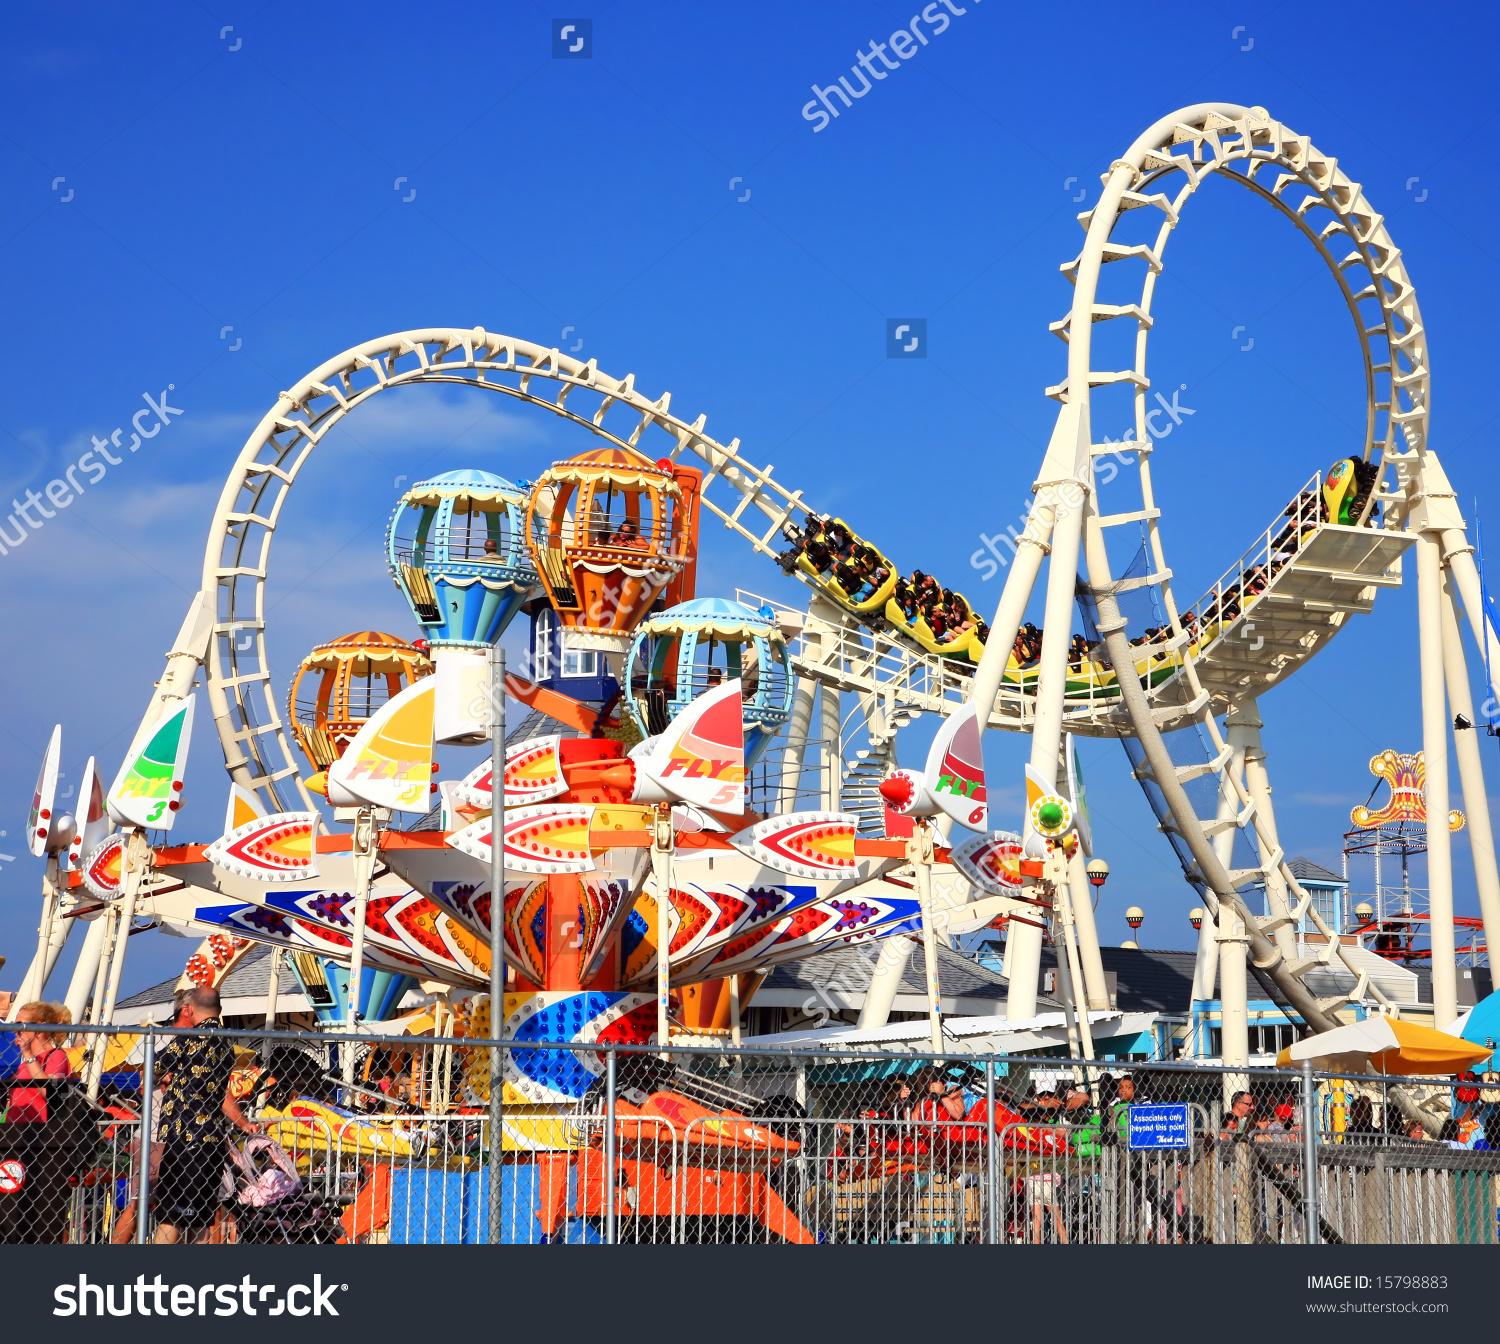 Amusement Park #20